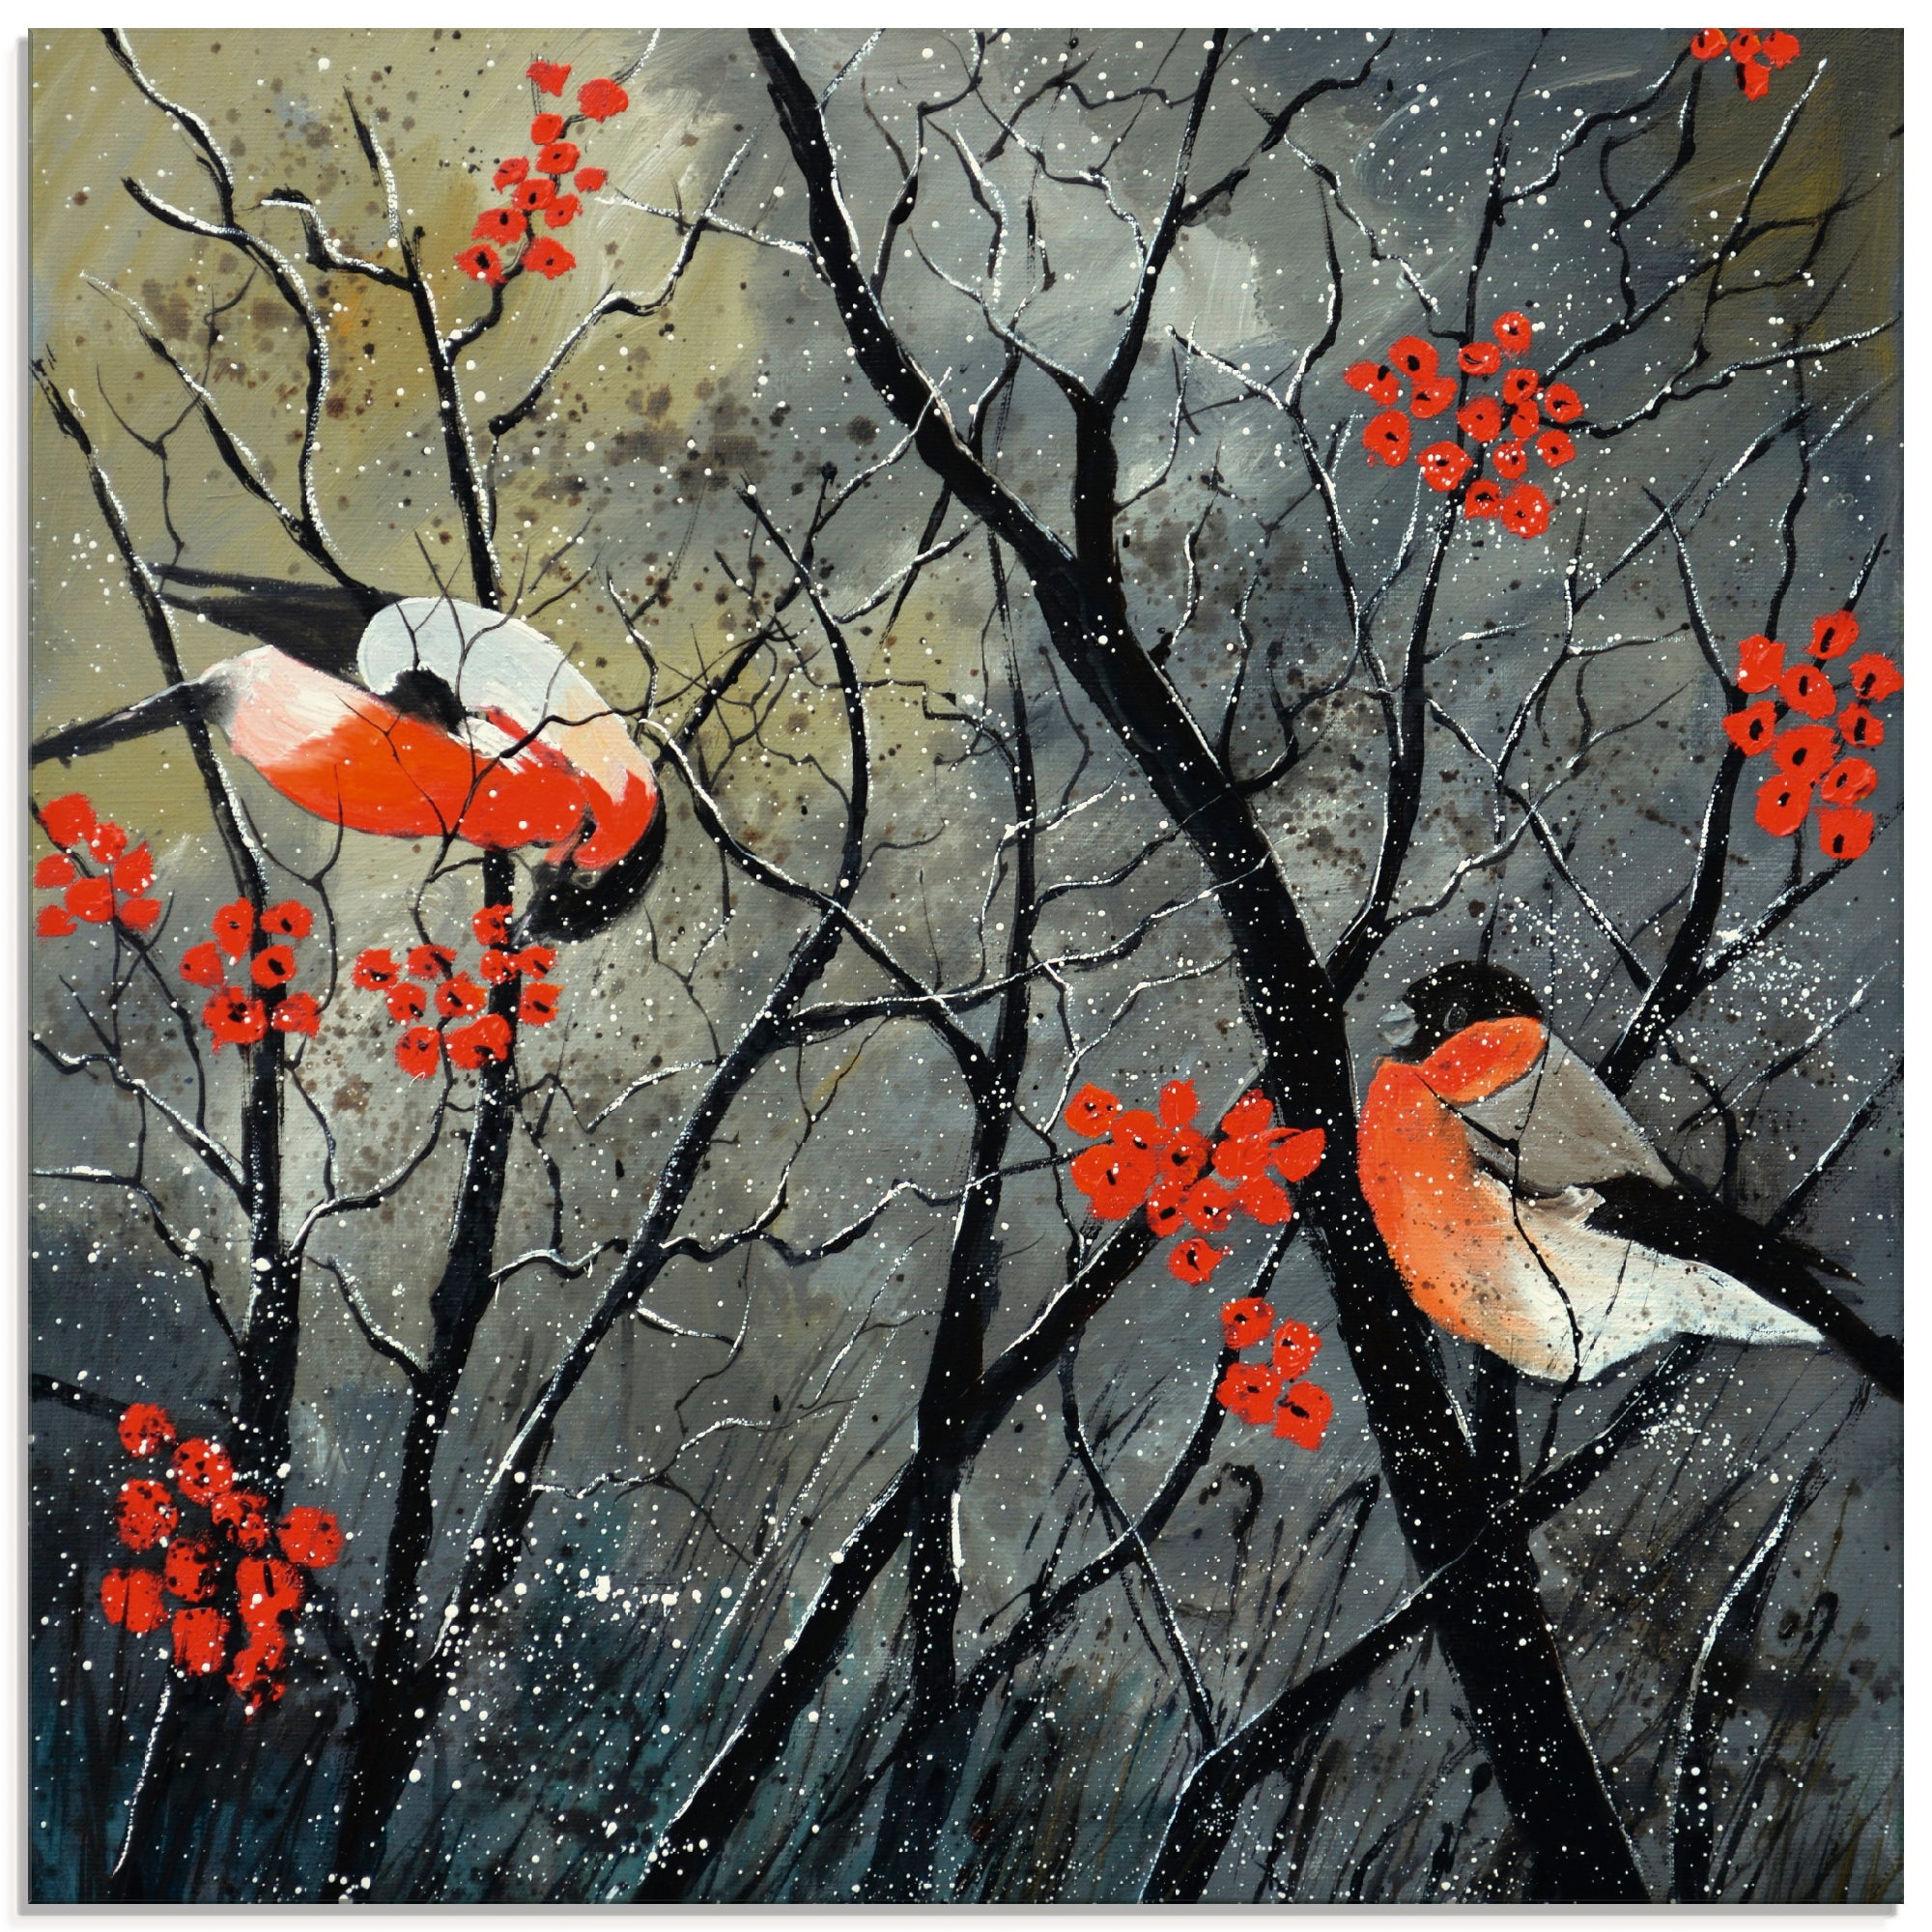 Grössen (1 Artland Vögel St.), Vögel, à bas in Winter«, im Glasbild verschiedenen prix »rote